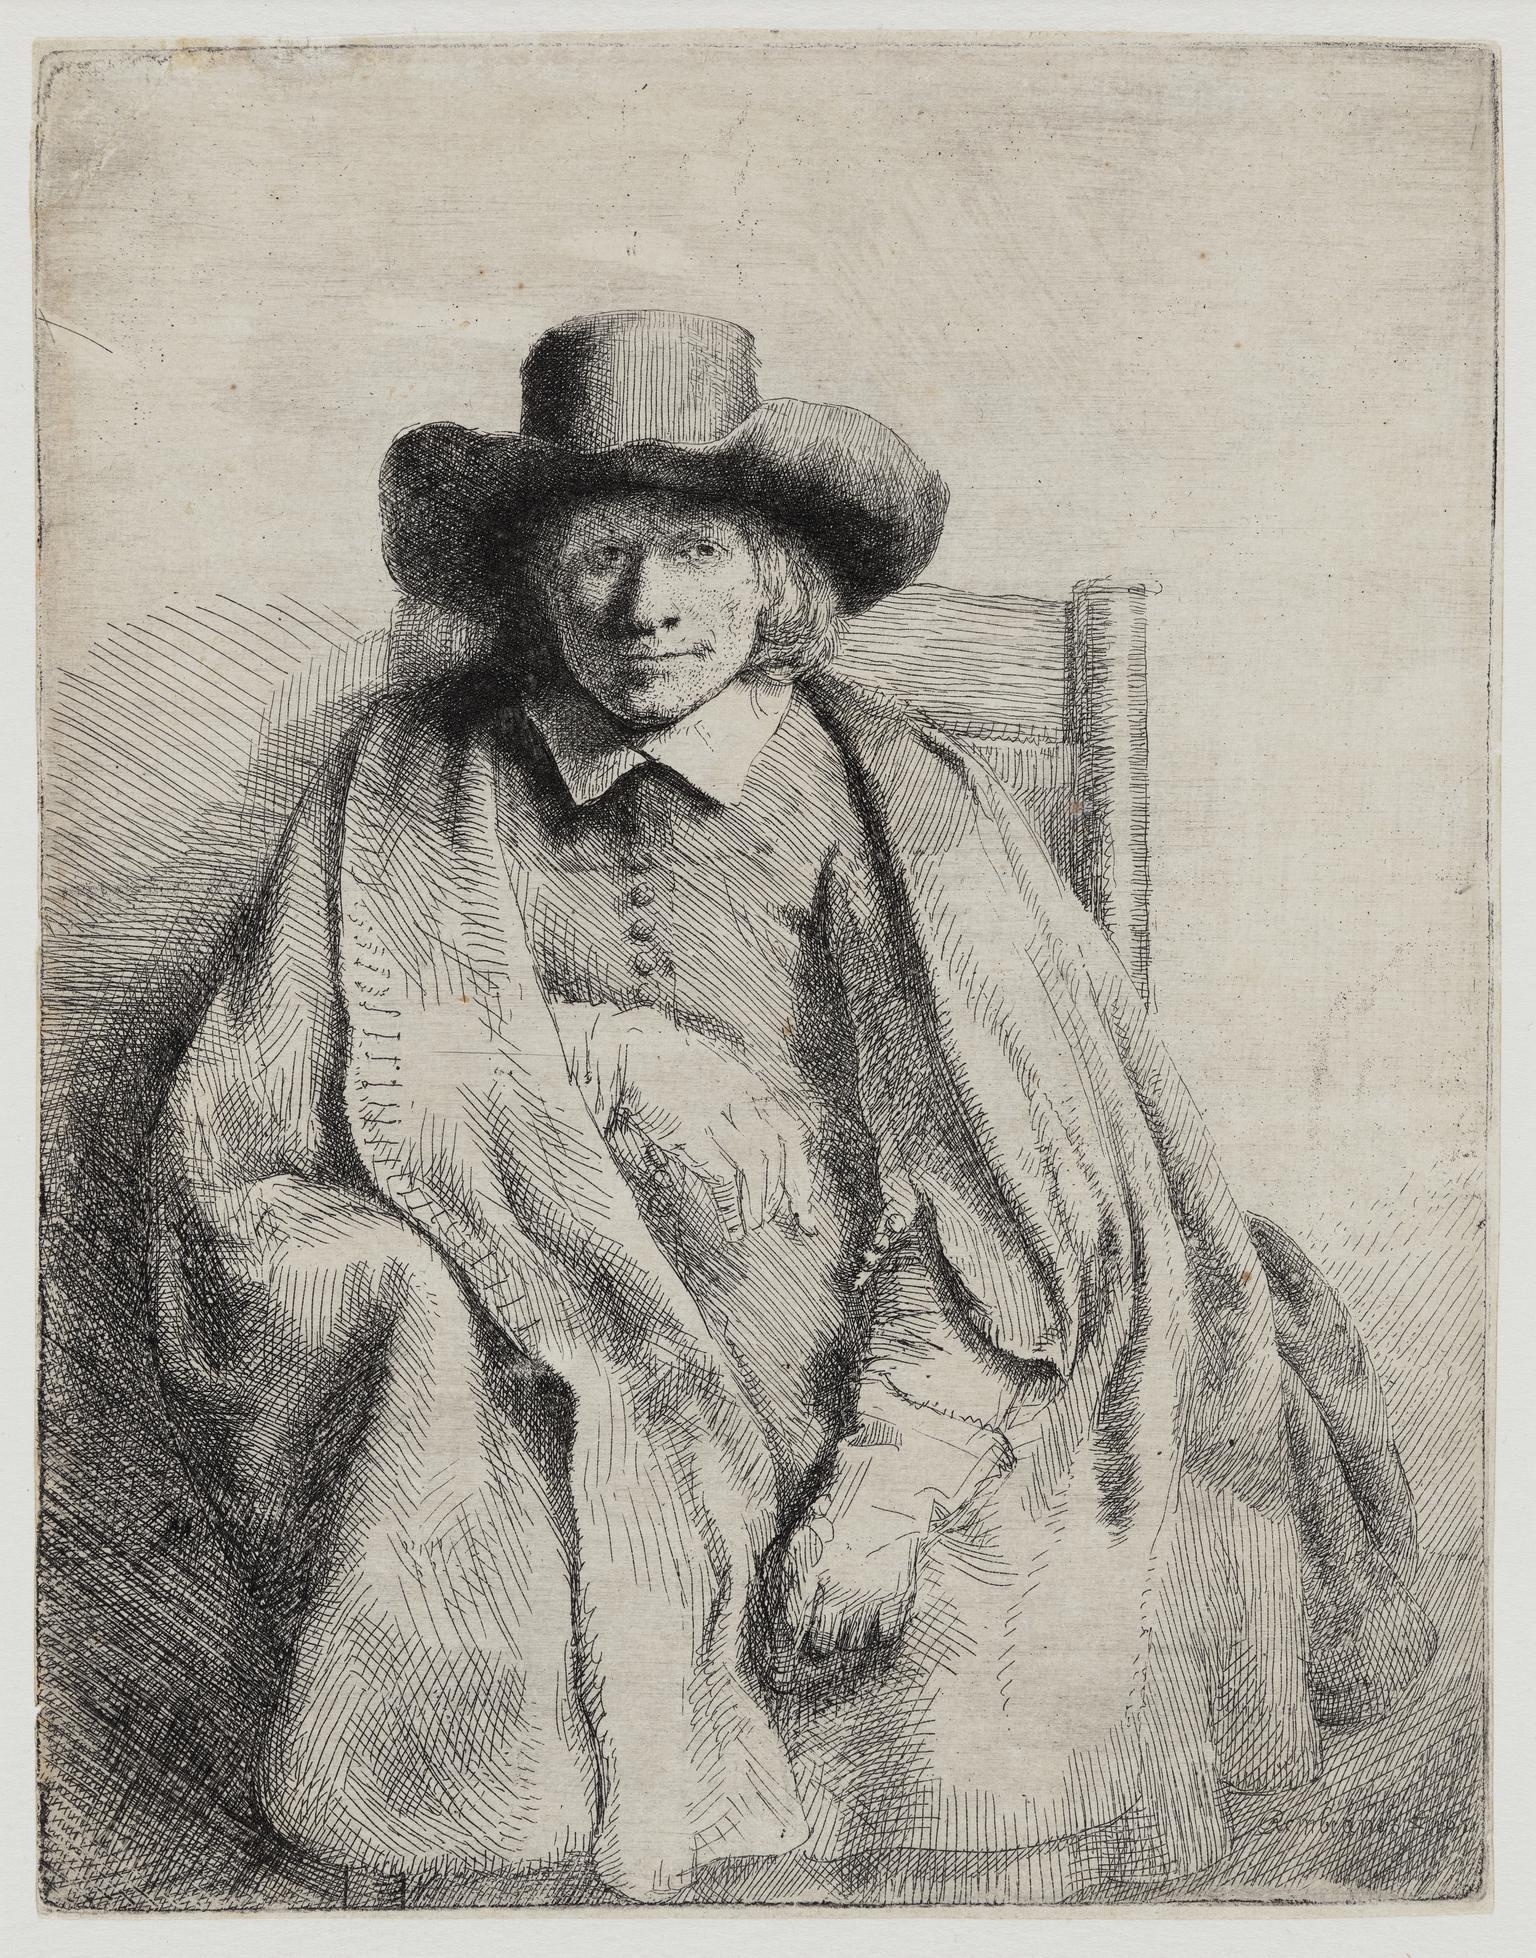 Clement de Jonghe, printseller (1st state)